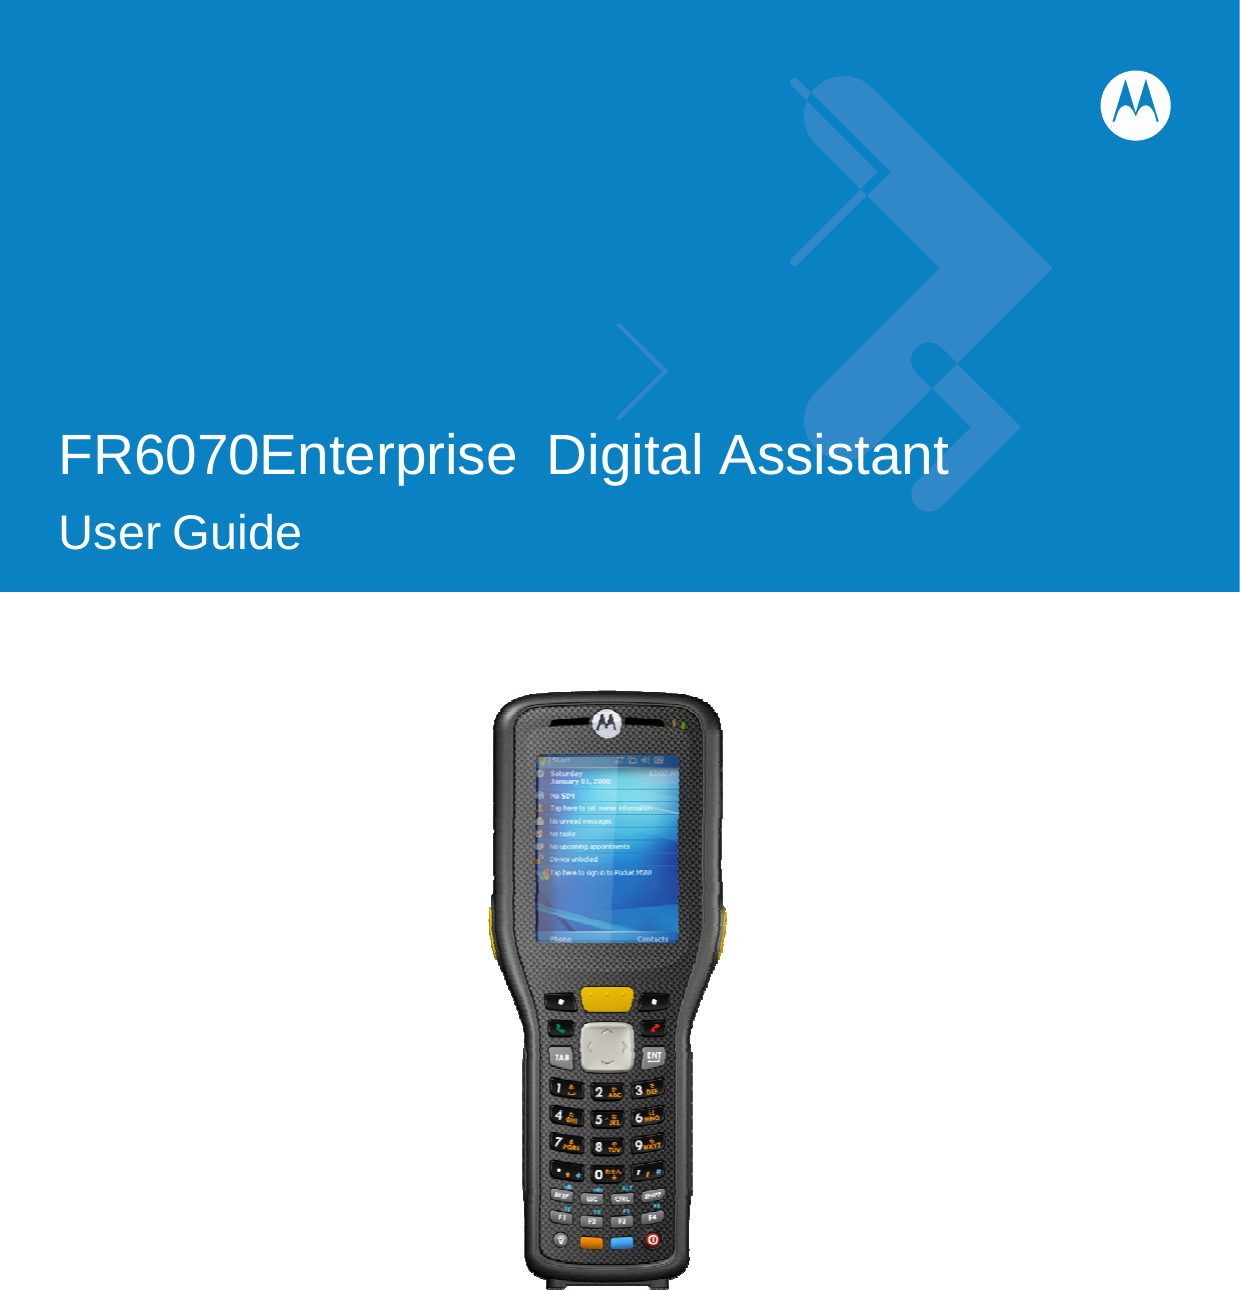              FR6070Enterprise Digital Assistant  User Guide                      